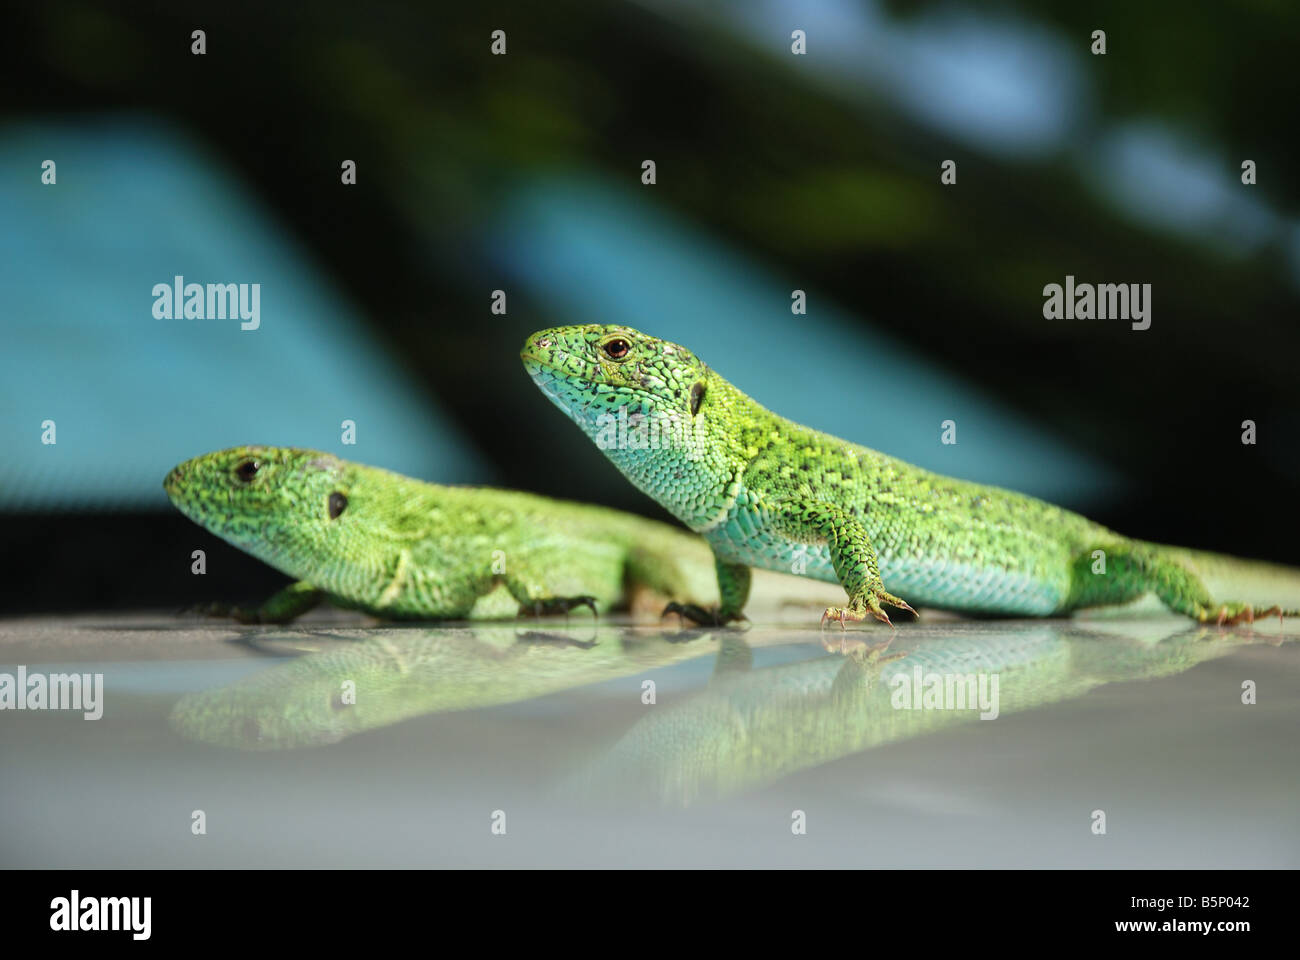 Dos verdes lagartos paralelo sentado sobre la superficie del espejo con reflexiones similares, close-up, centrarse en primer plano Foto de stock